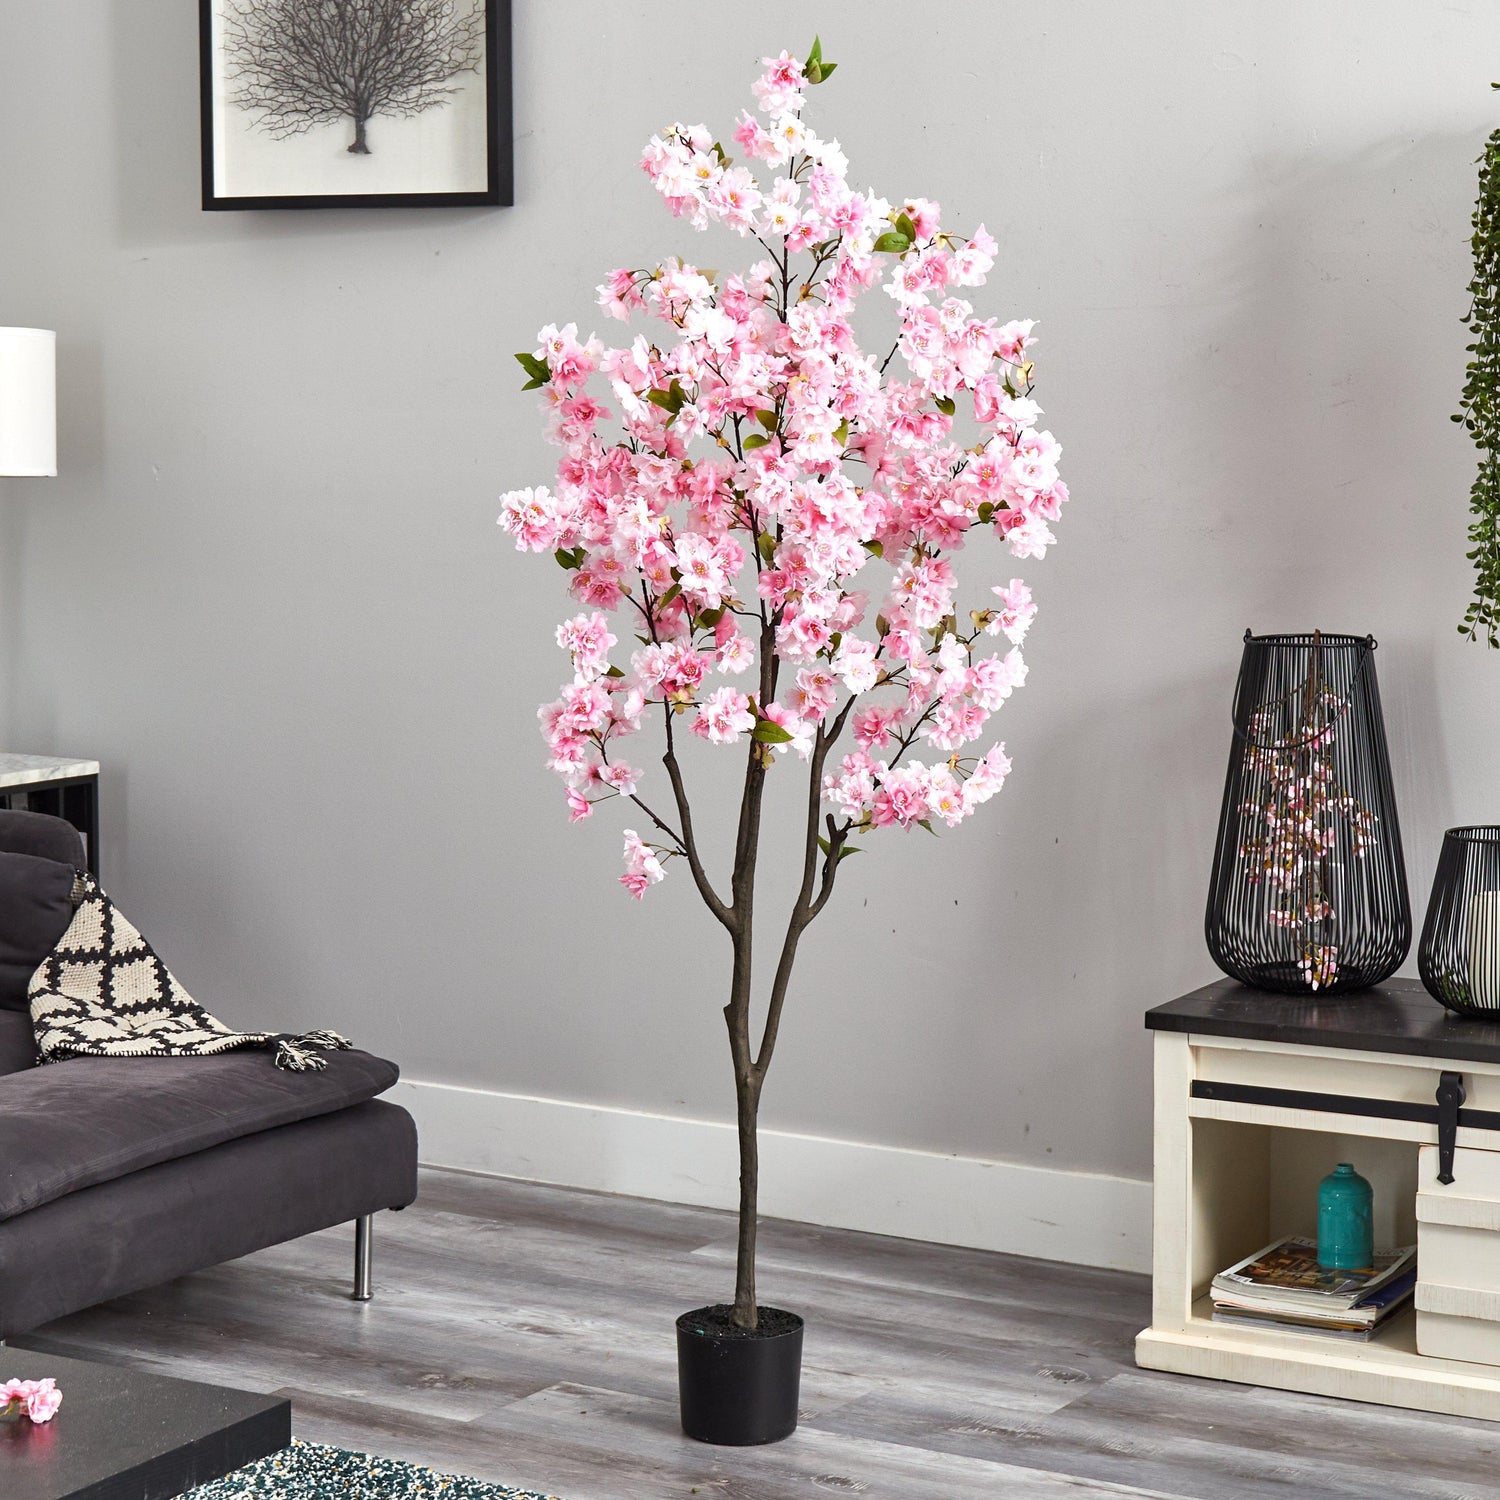 6’ Cherry Blossom Artificial Tree